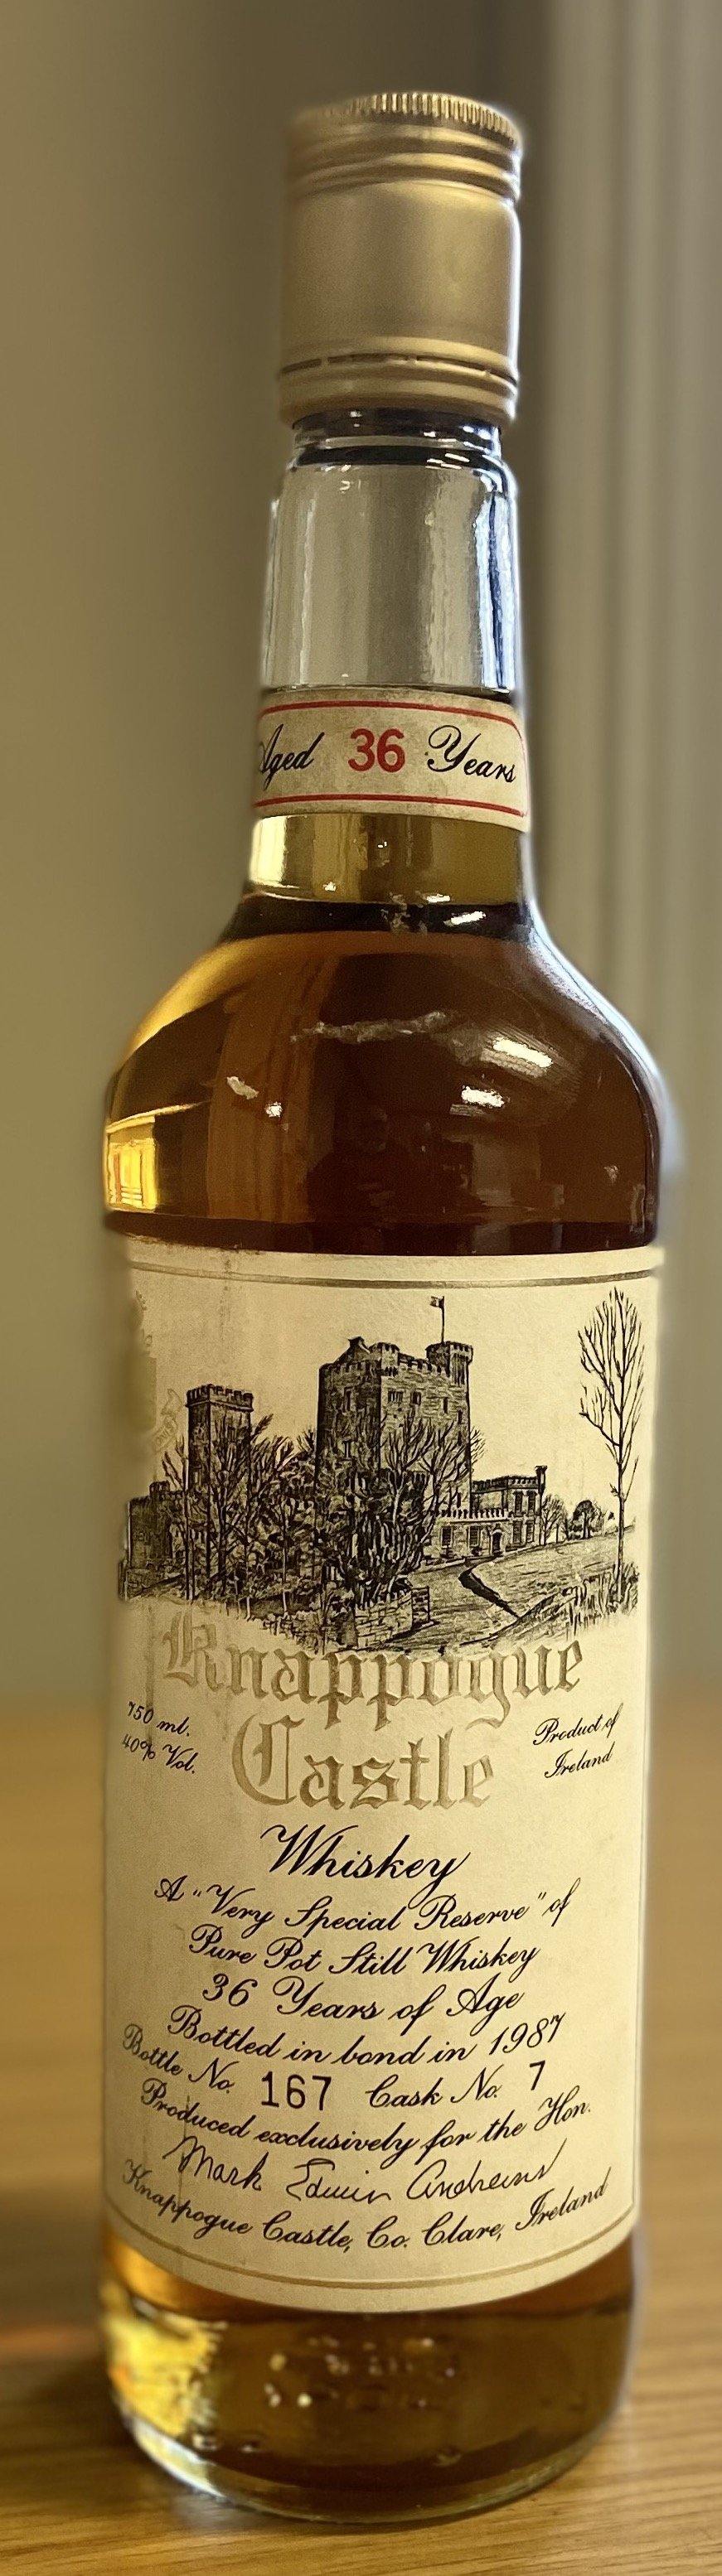 Knappogue Castle 1951 - DrinksHero